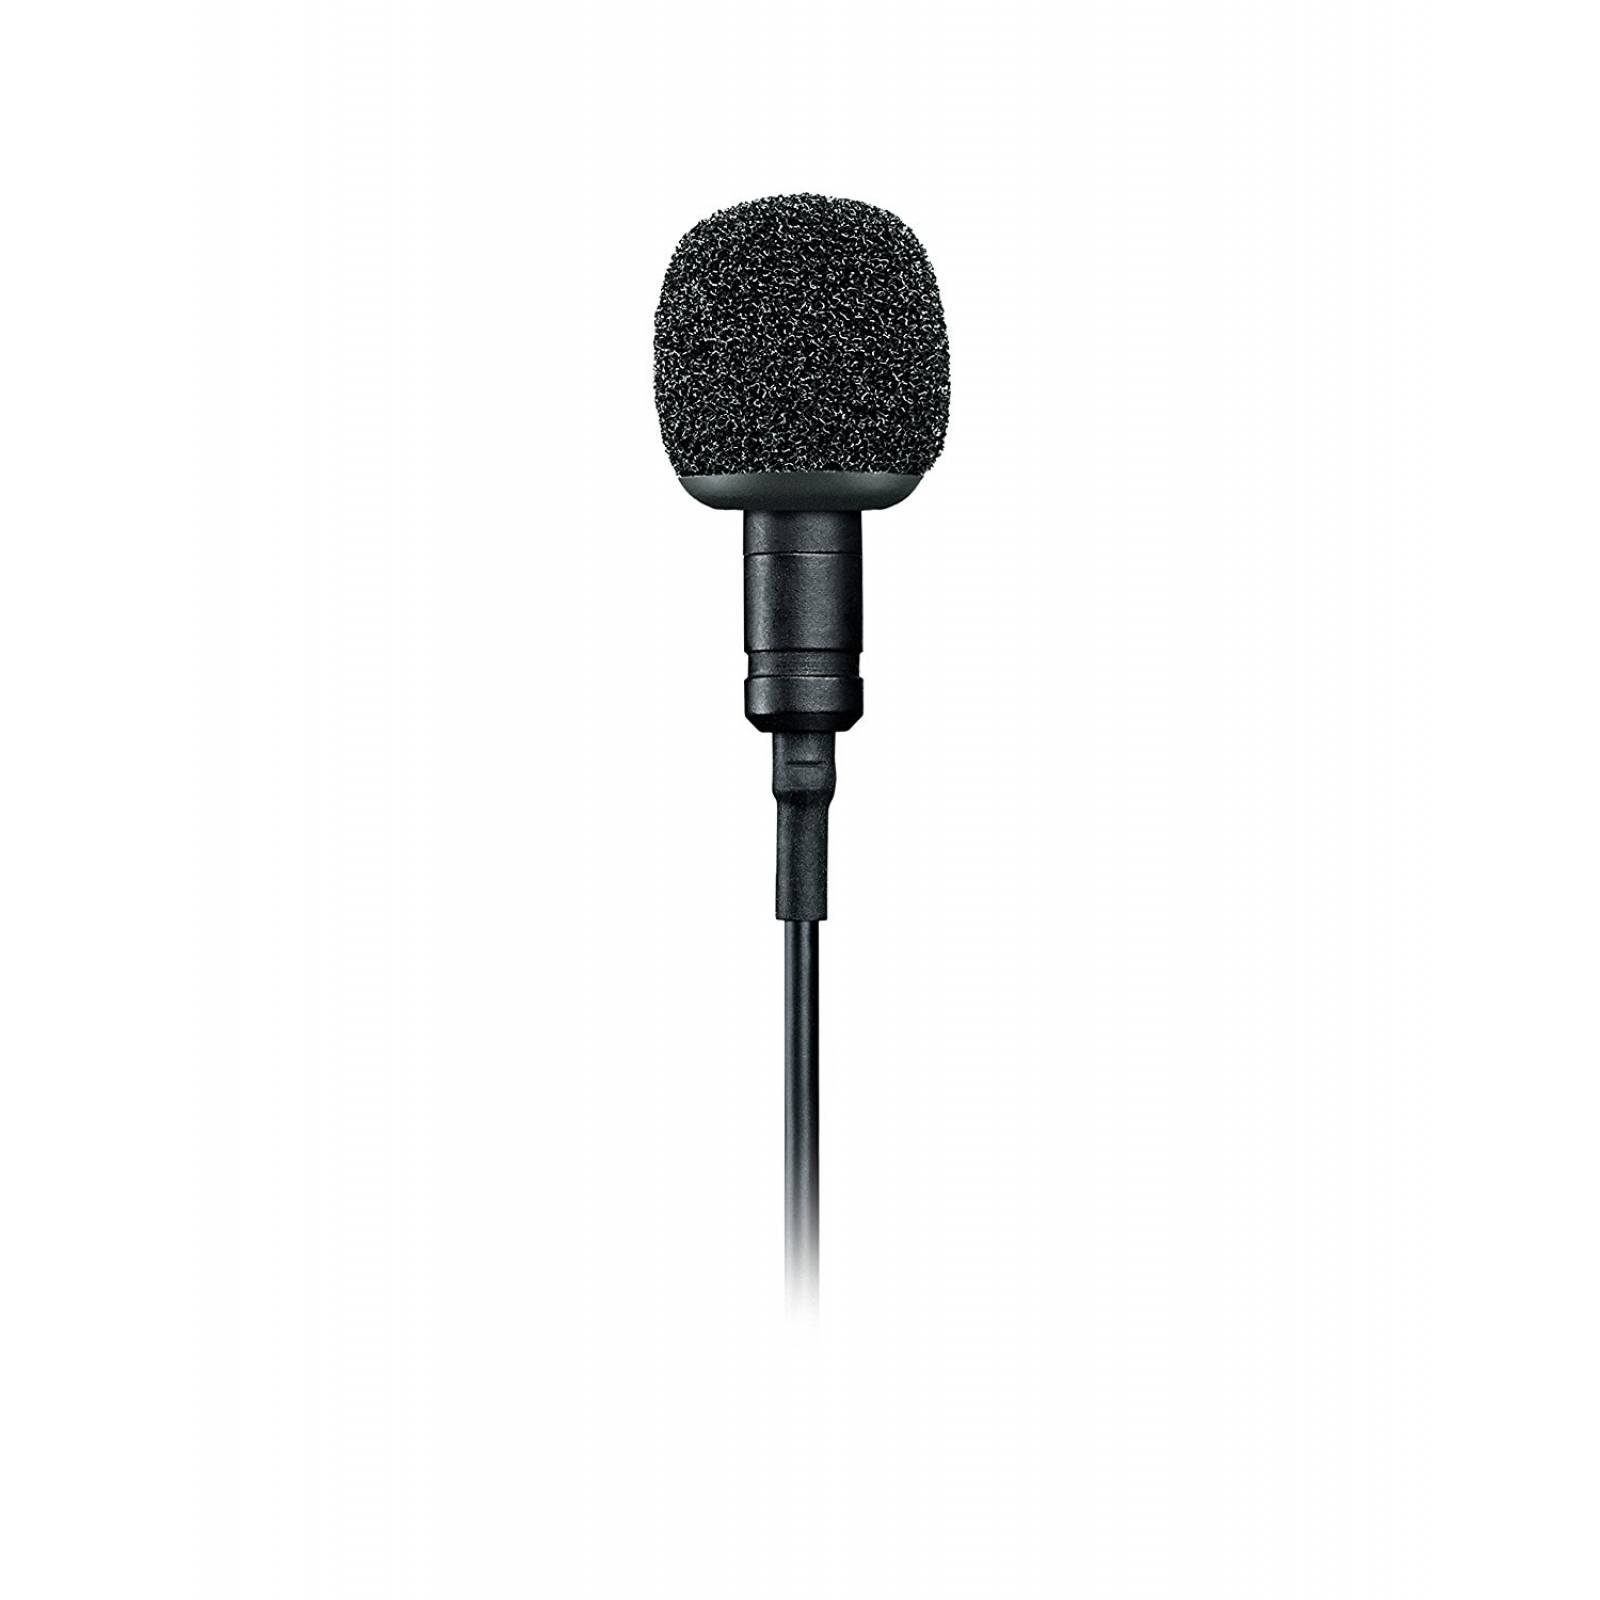 MVL Shure micrófono Lavalier omnidireccional de condensador